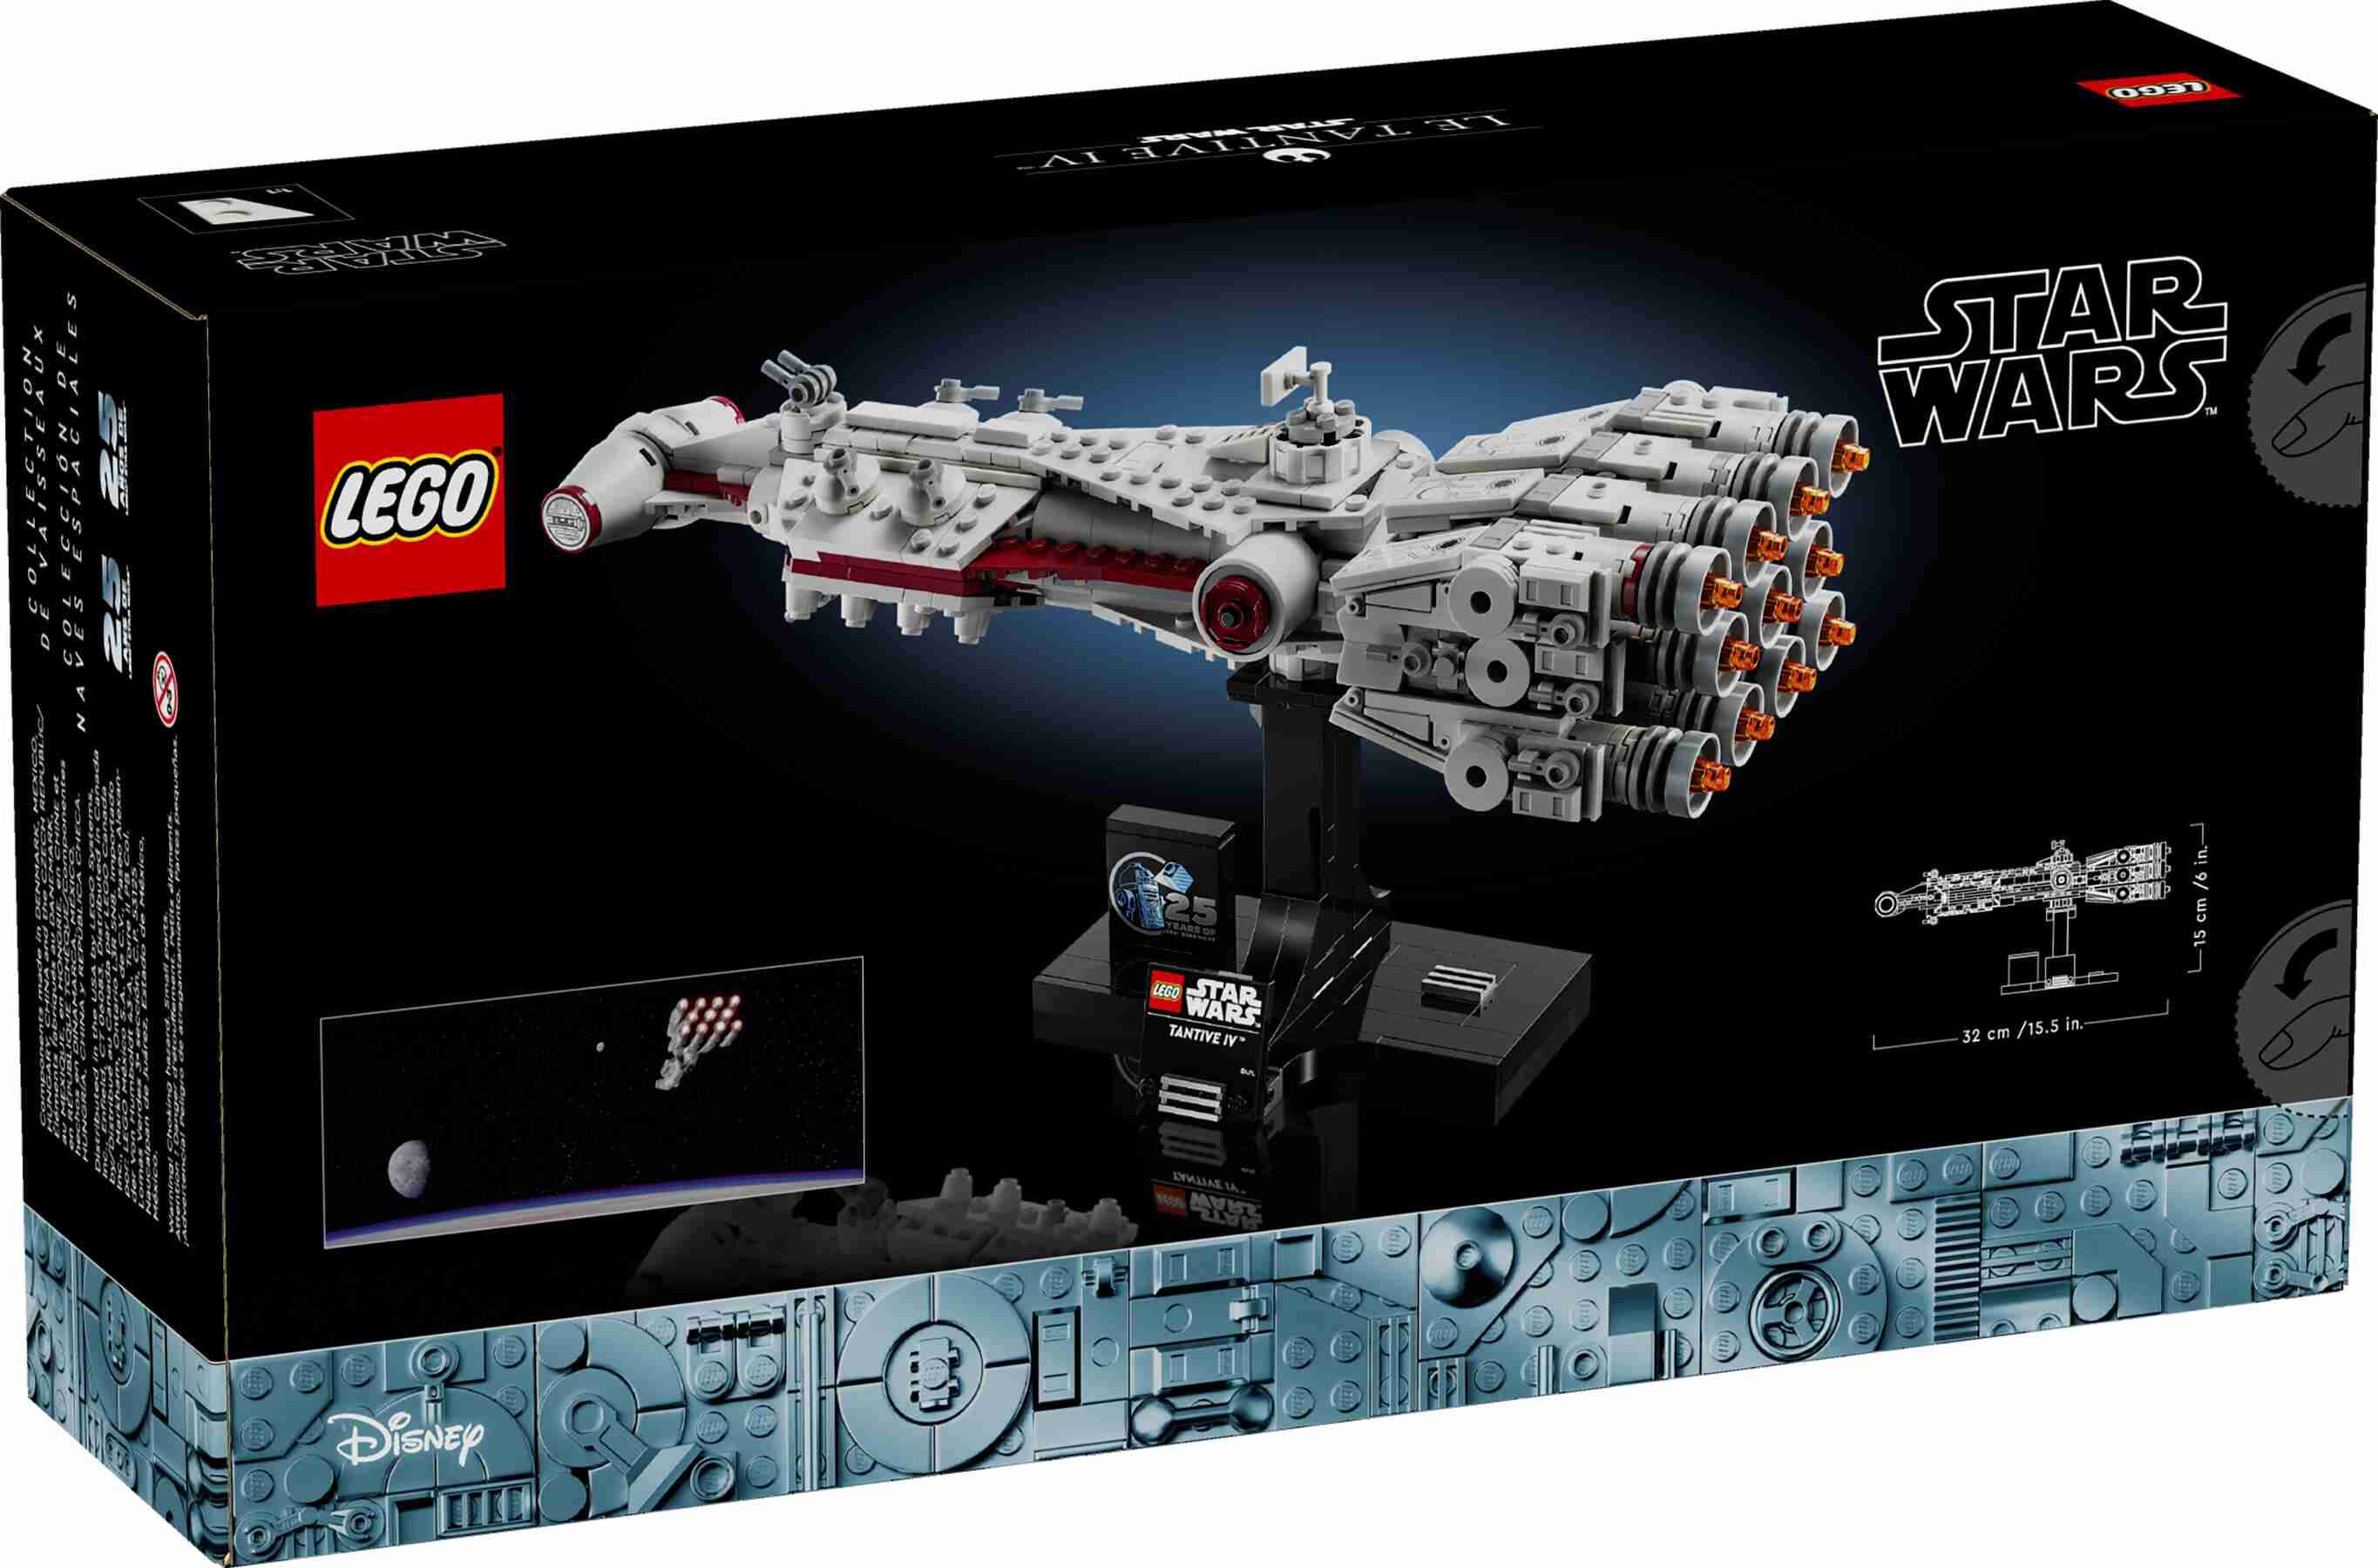 LEGO 75376 Star Wars Tantive IV, Ständer zum Ausstellen, 11 Triebwerke